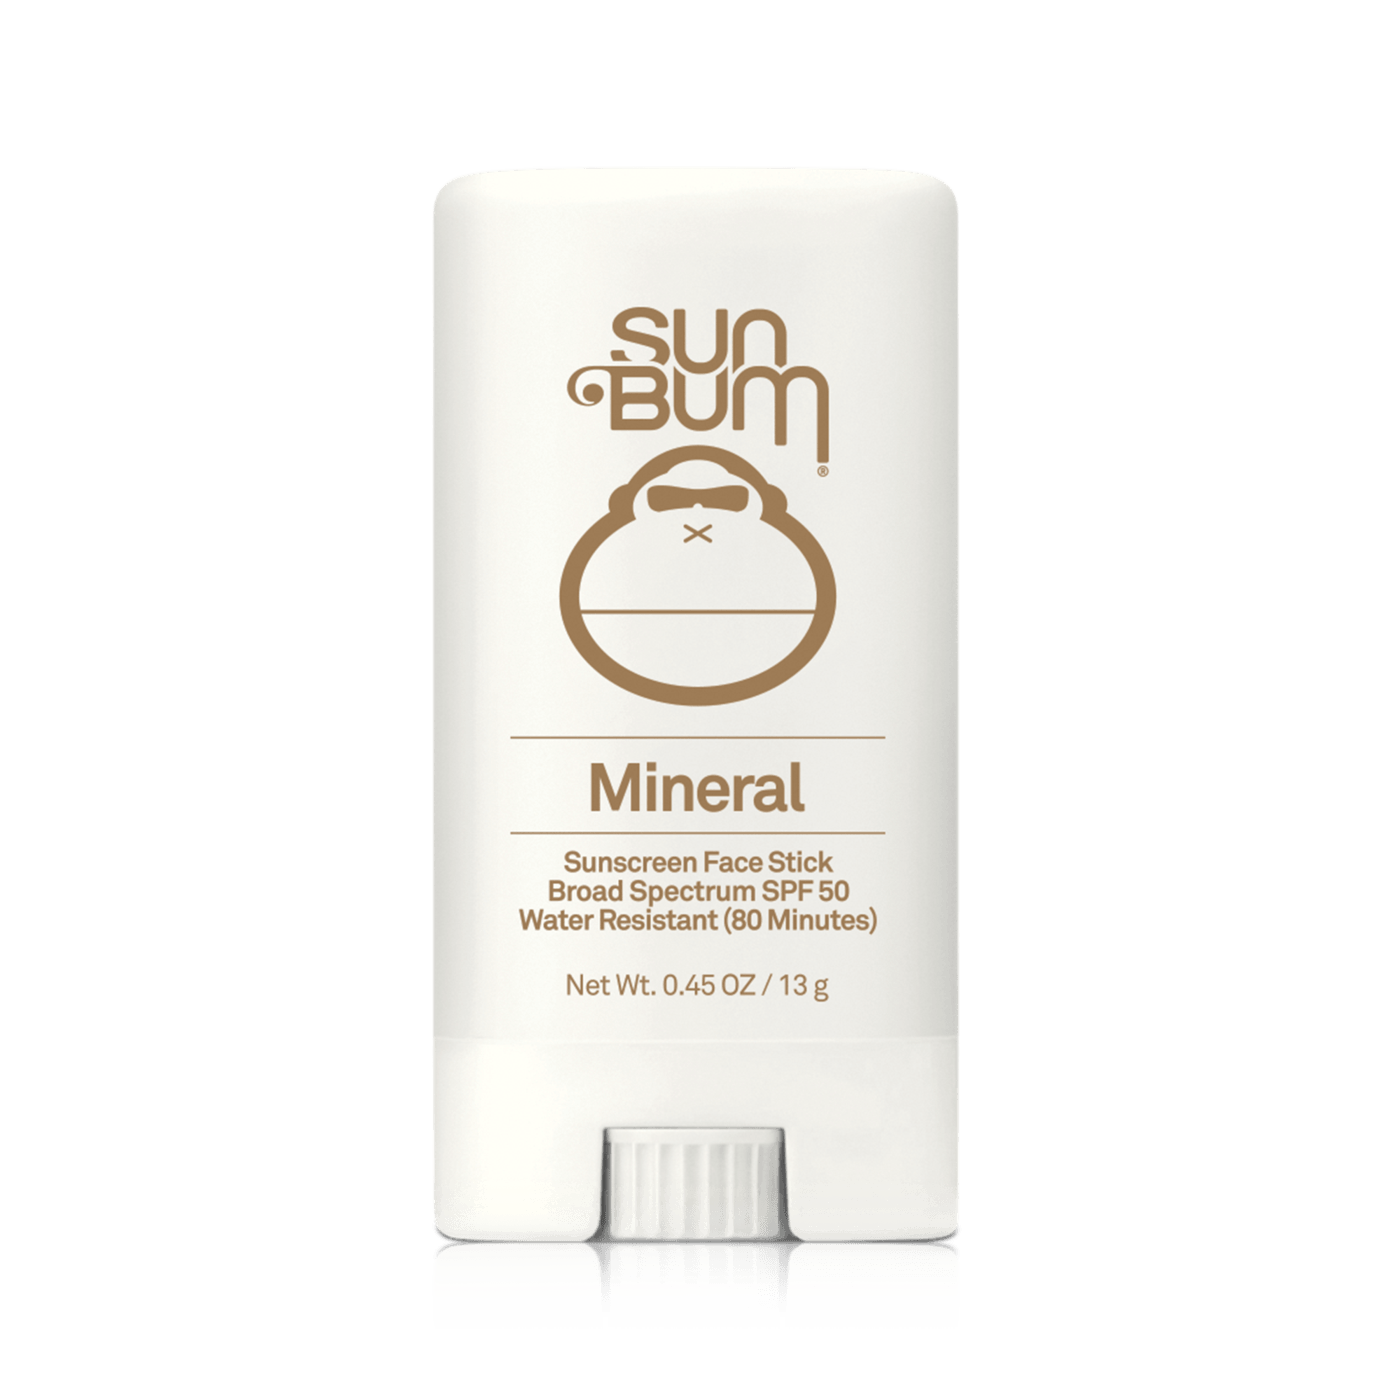 SUN BUM Mineral SPF 50 Sunscreen Face Stick ACCESSORIES - Sunscreen Sun Bum 